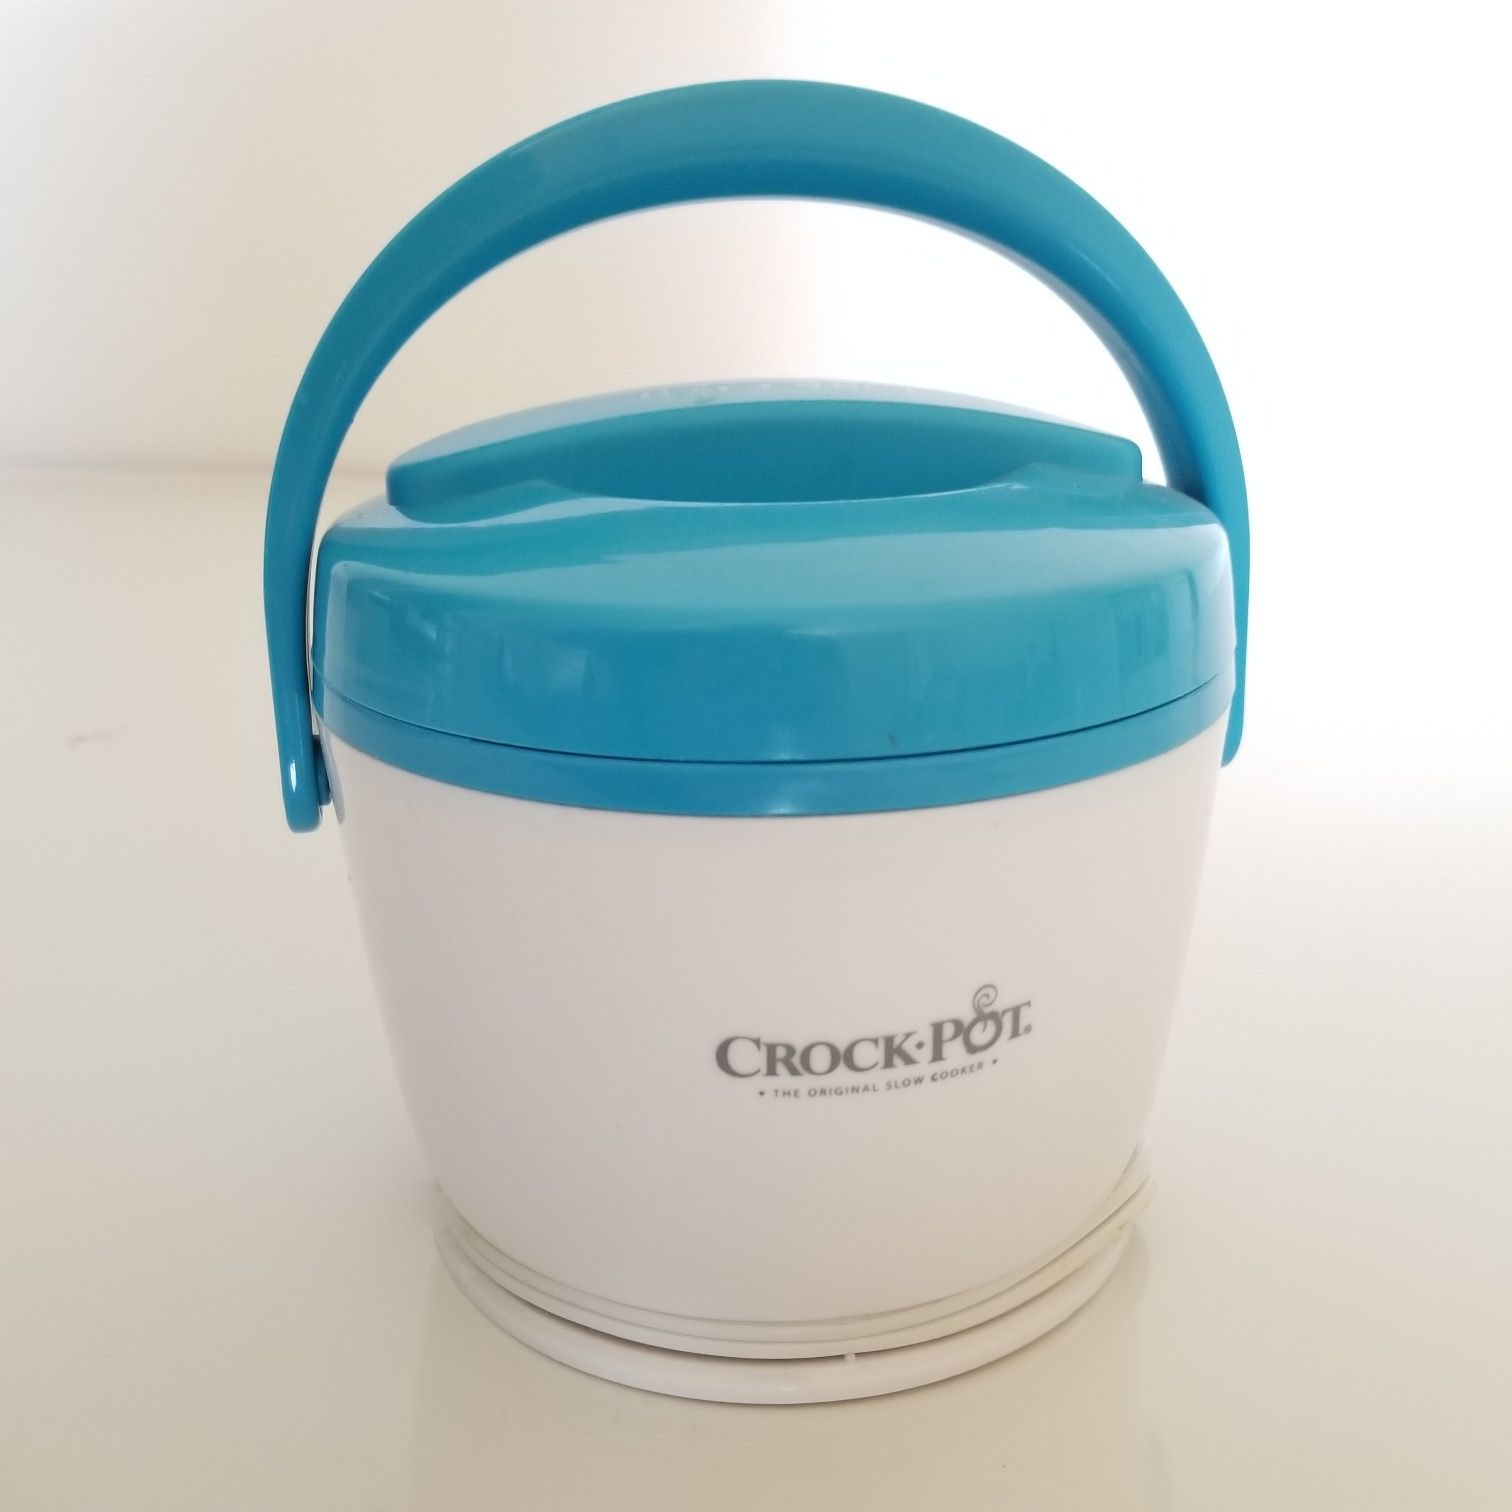 Crock-Pot 20-Ounce Lunch Crock Food Warmer in Blue